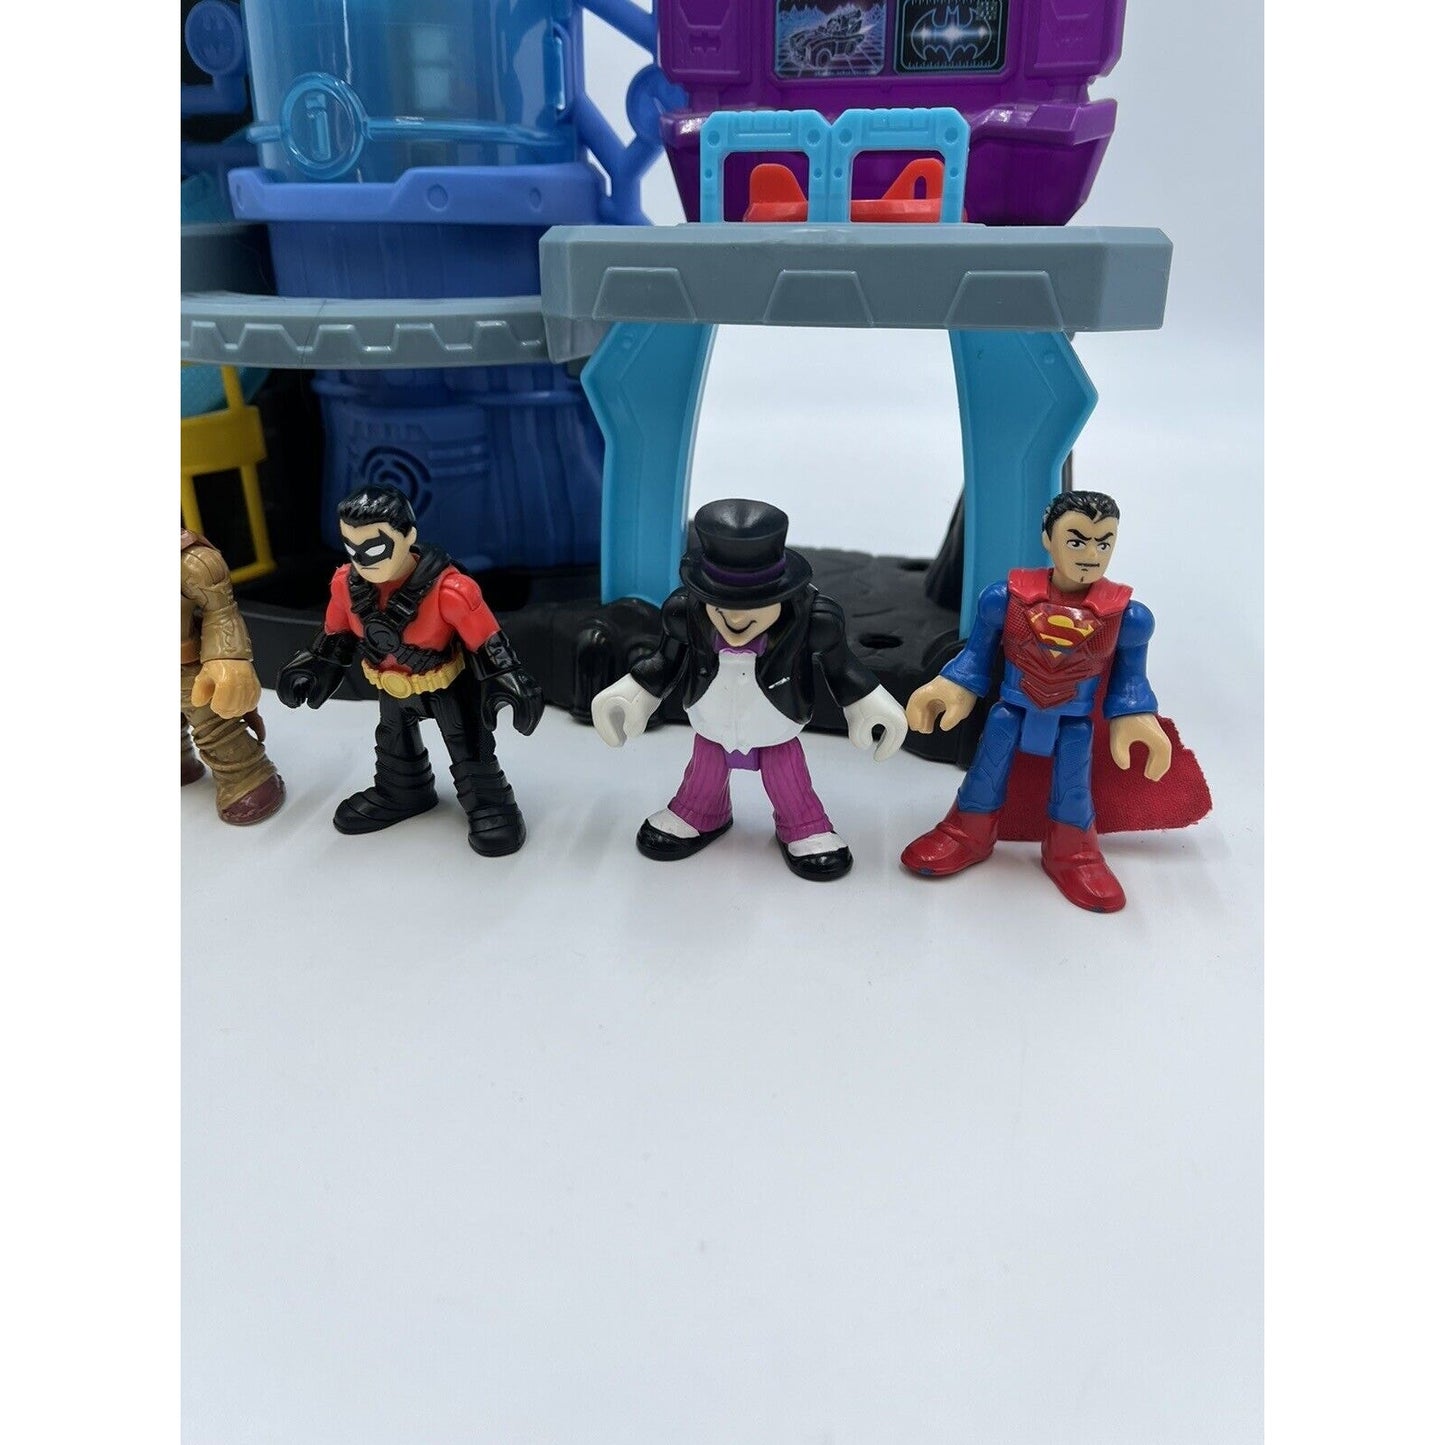 Imaginext DC Super Friends Bat-Tech Batcave Batman Playset w/ Figures Superman